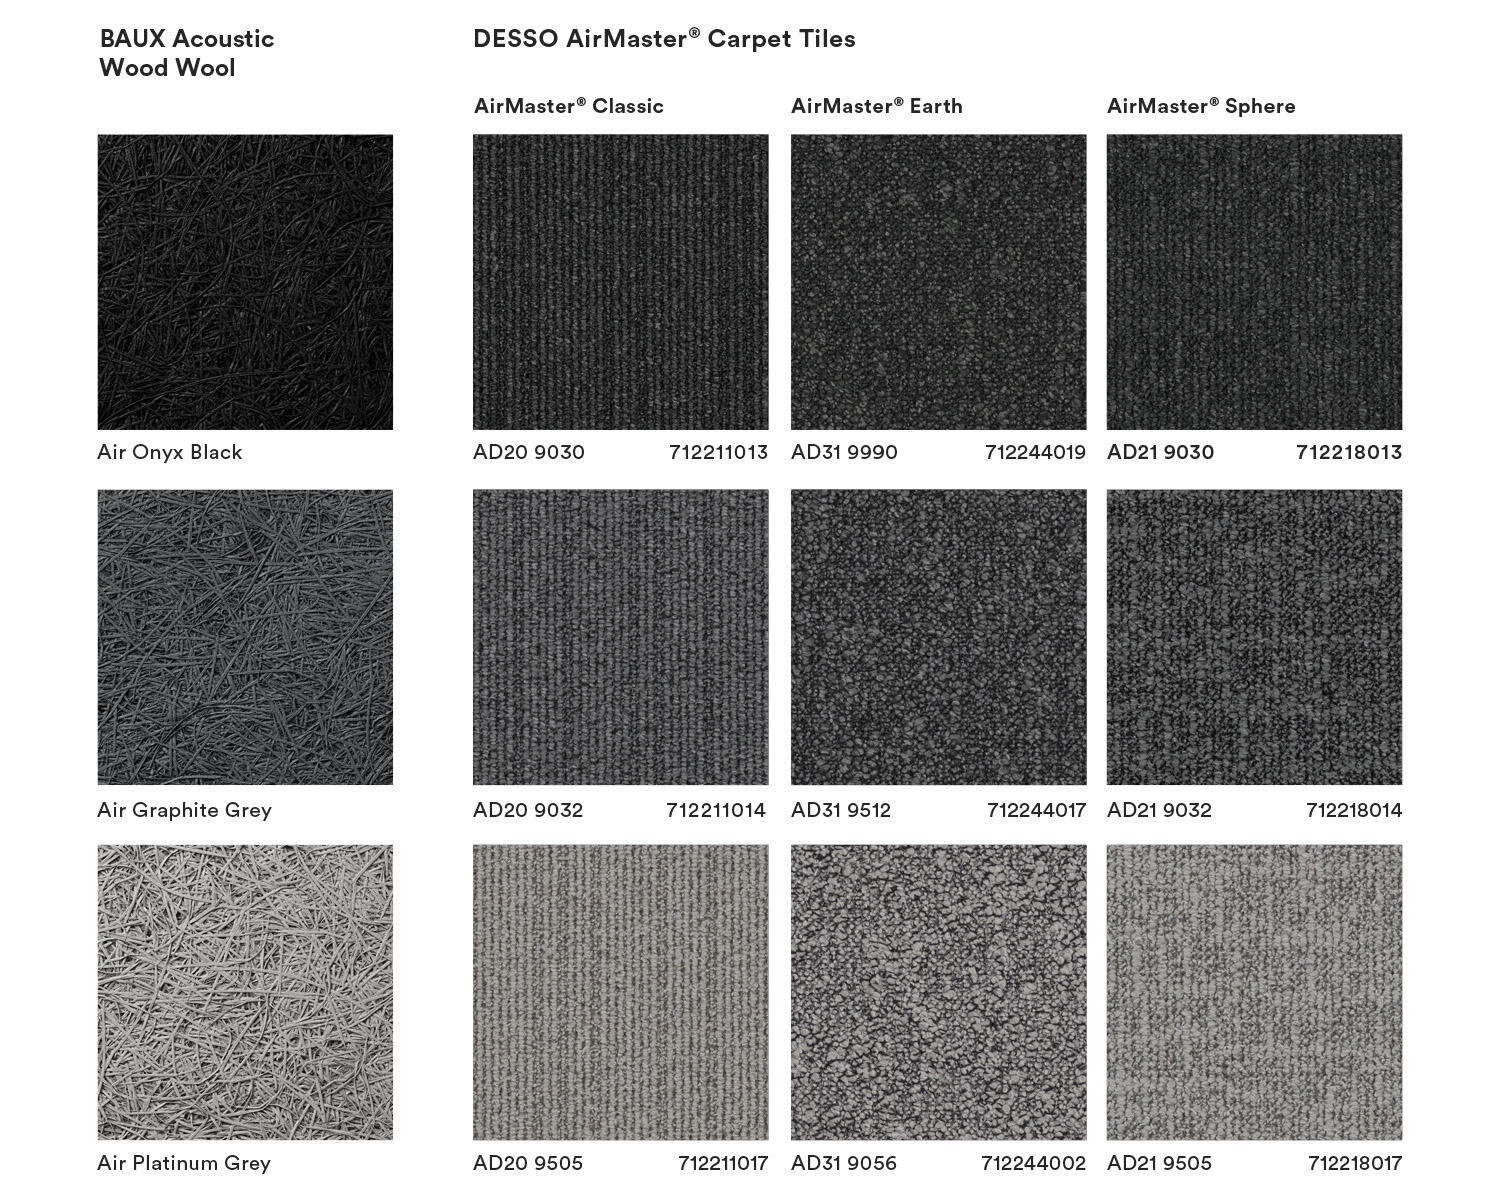 colour range Midnights DESSO carpet tile collection with Baux acoustic panels